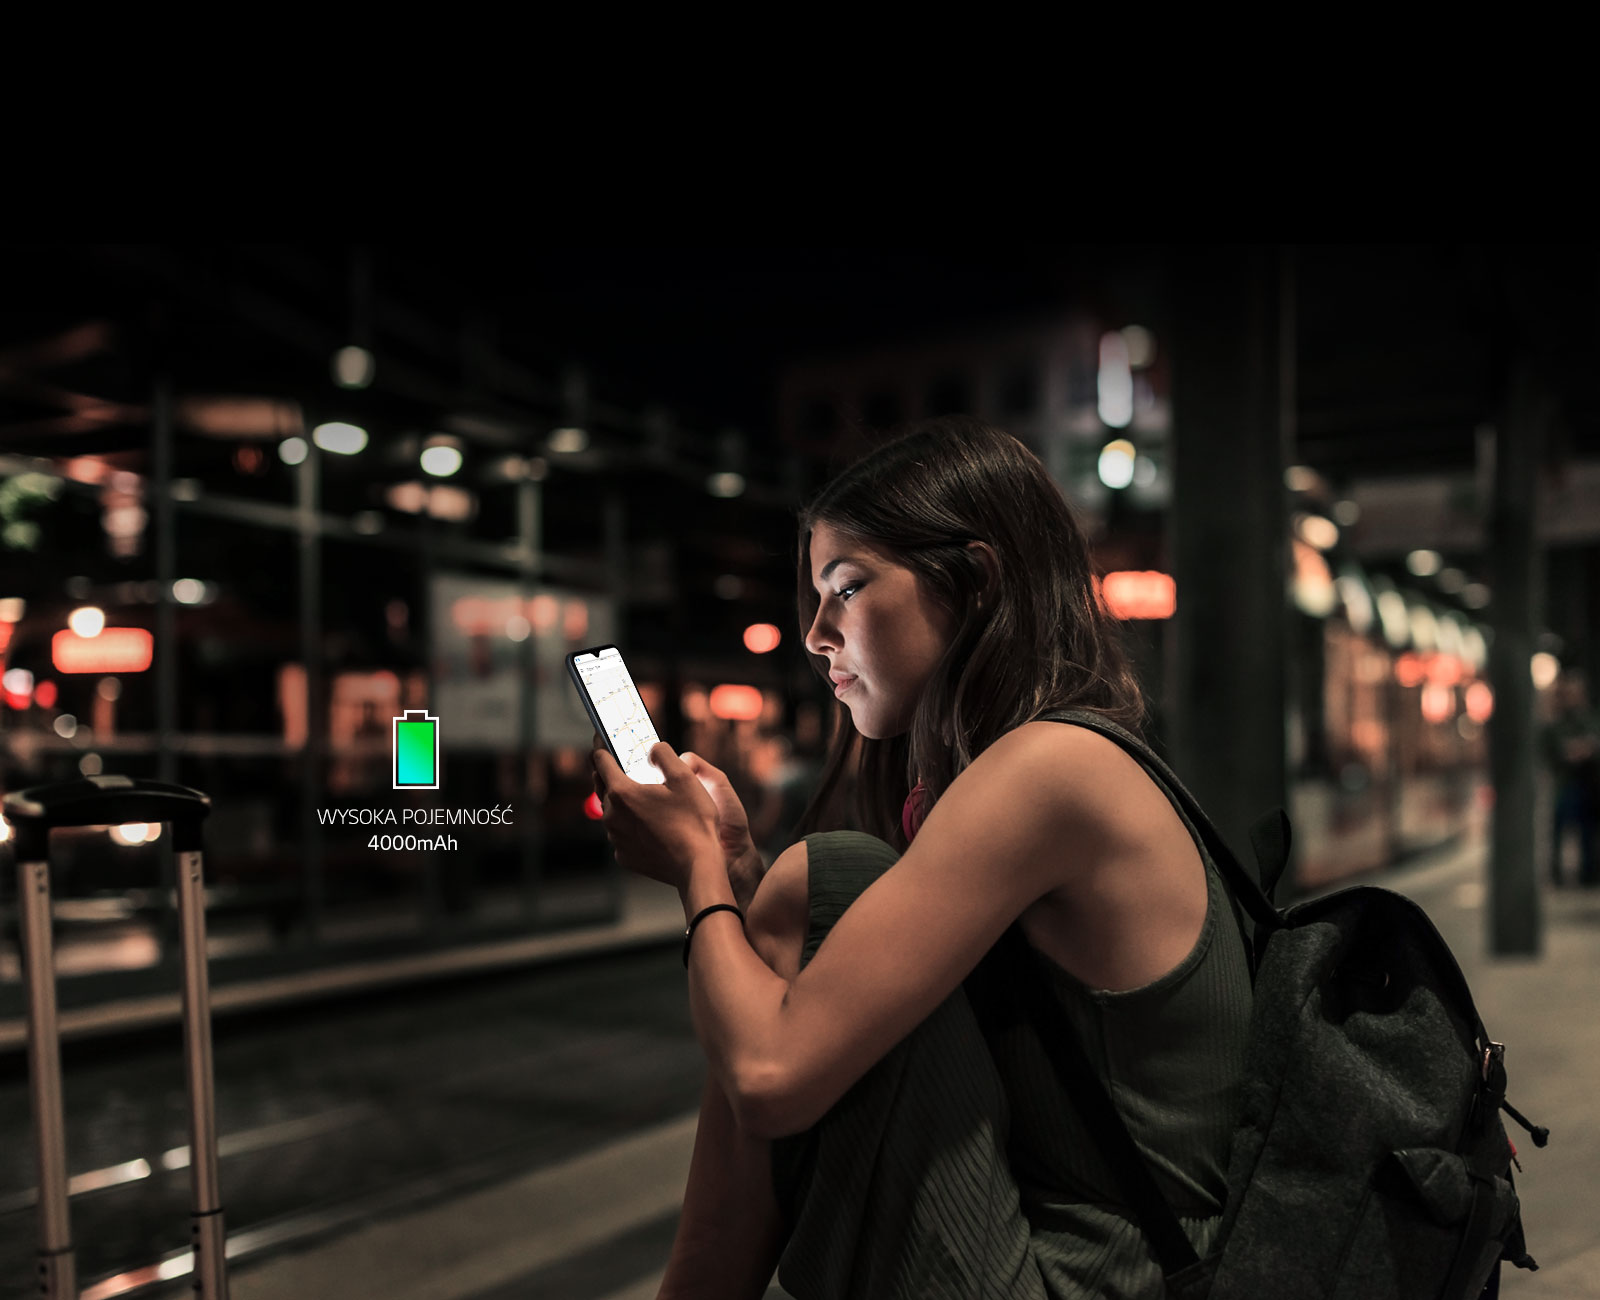 Kobieta przeglądająca internet na smartfonie późno w nocy na stacji metra z dużym  zapasem  energii w baterii